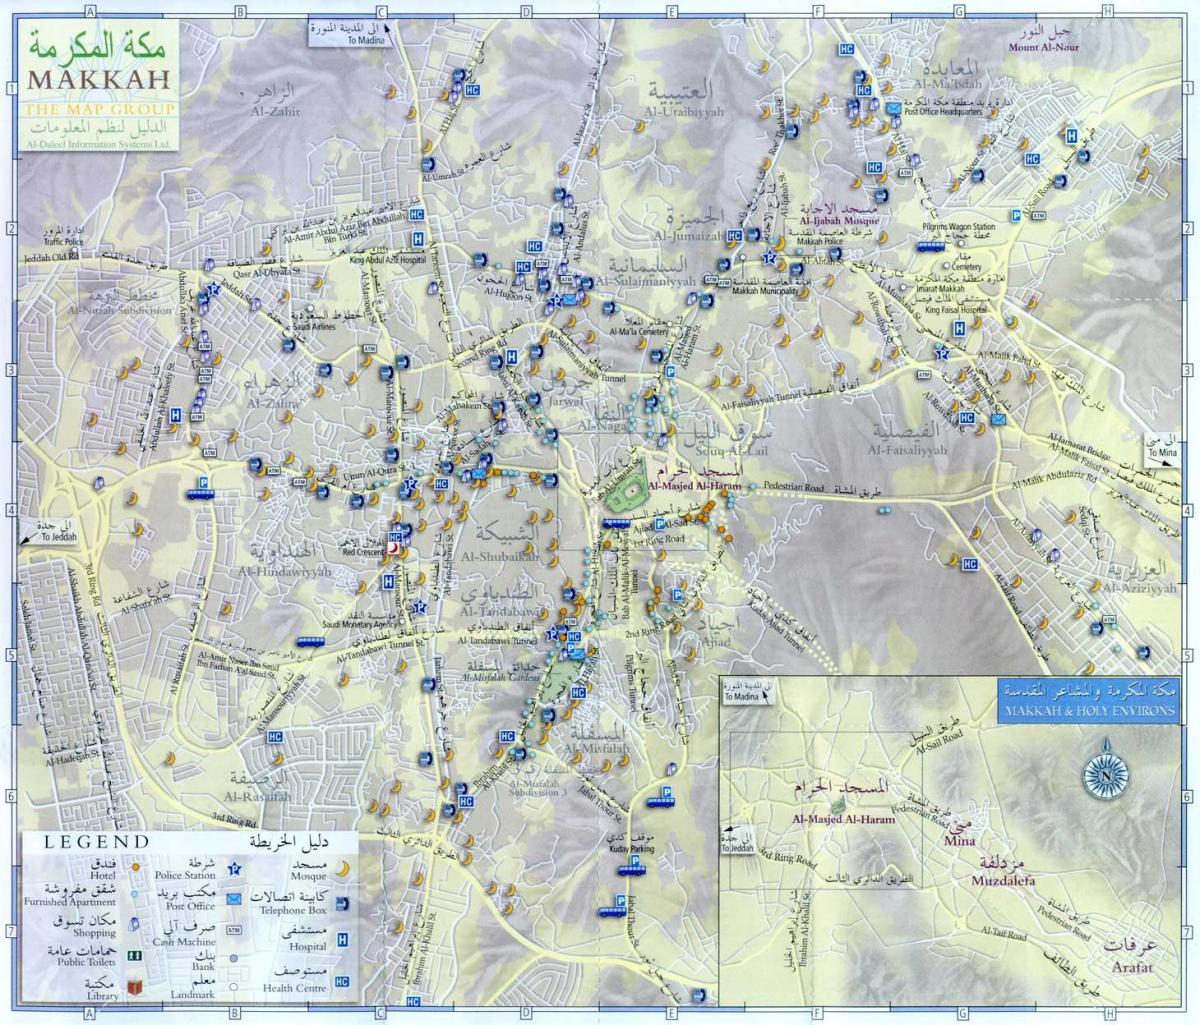  χάρτης της Μέκκα ziyarat μέρη